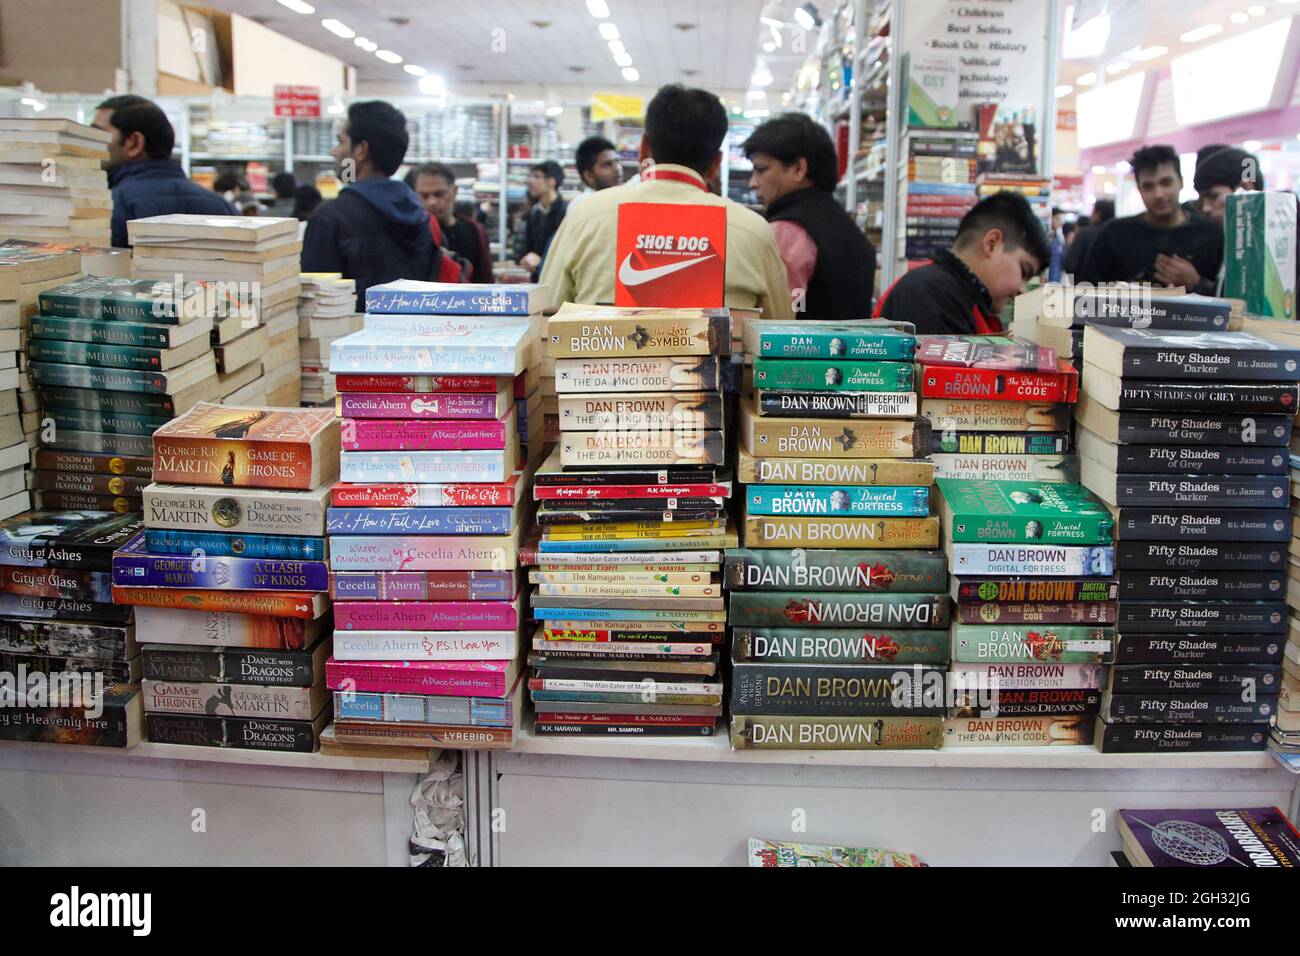 Les visiteurs inspectent et achètent les livres exposés à une foire du livre à New Delhi, en Inde. Banque D'Images